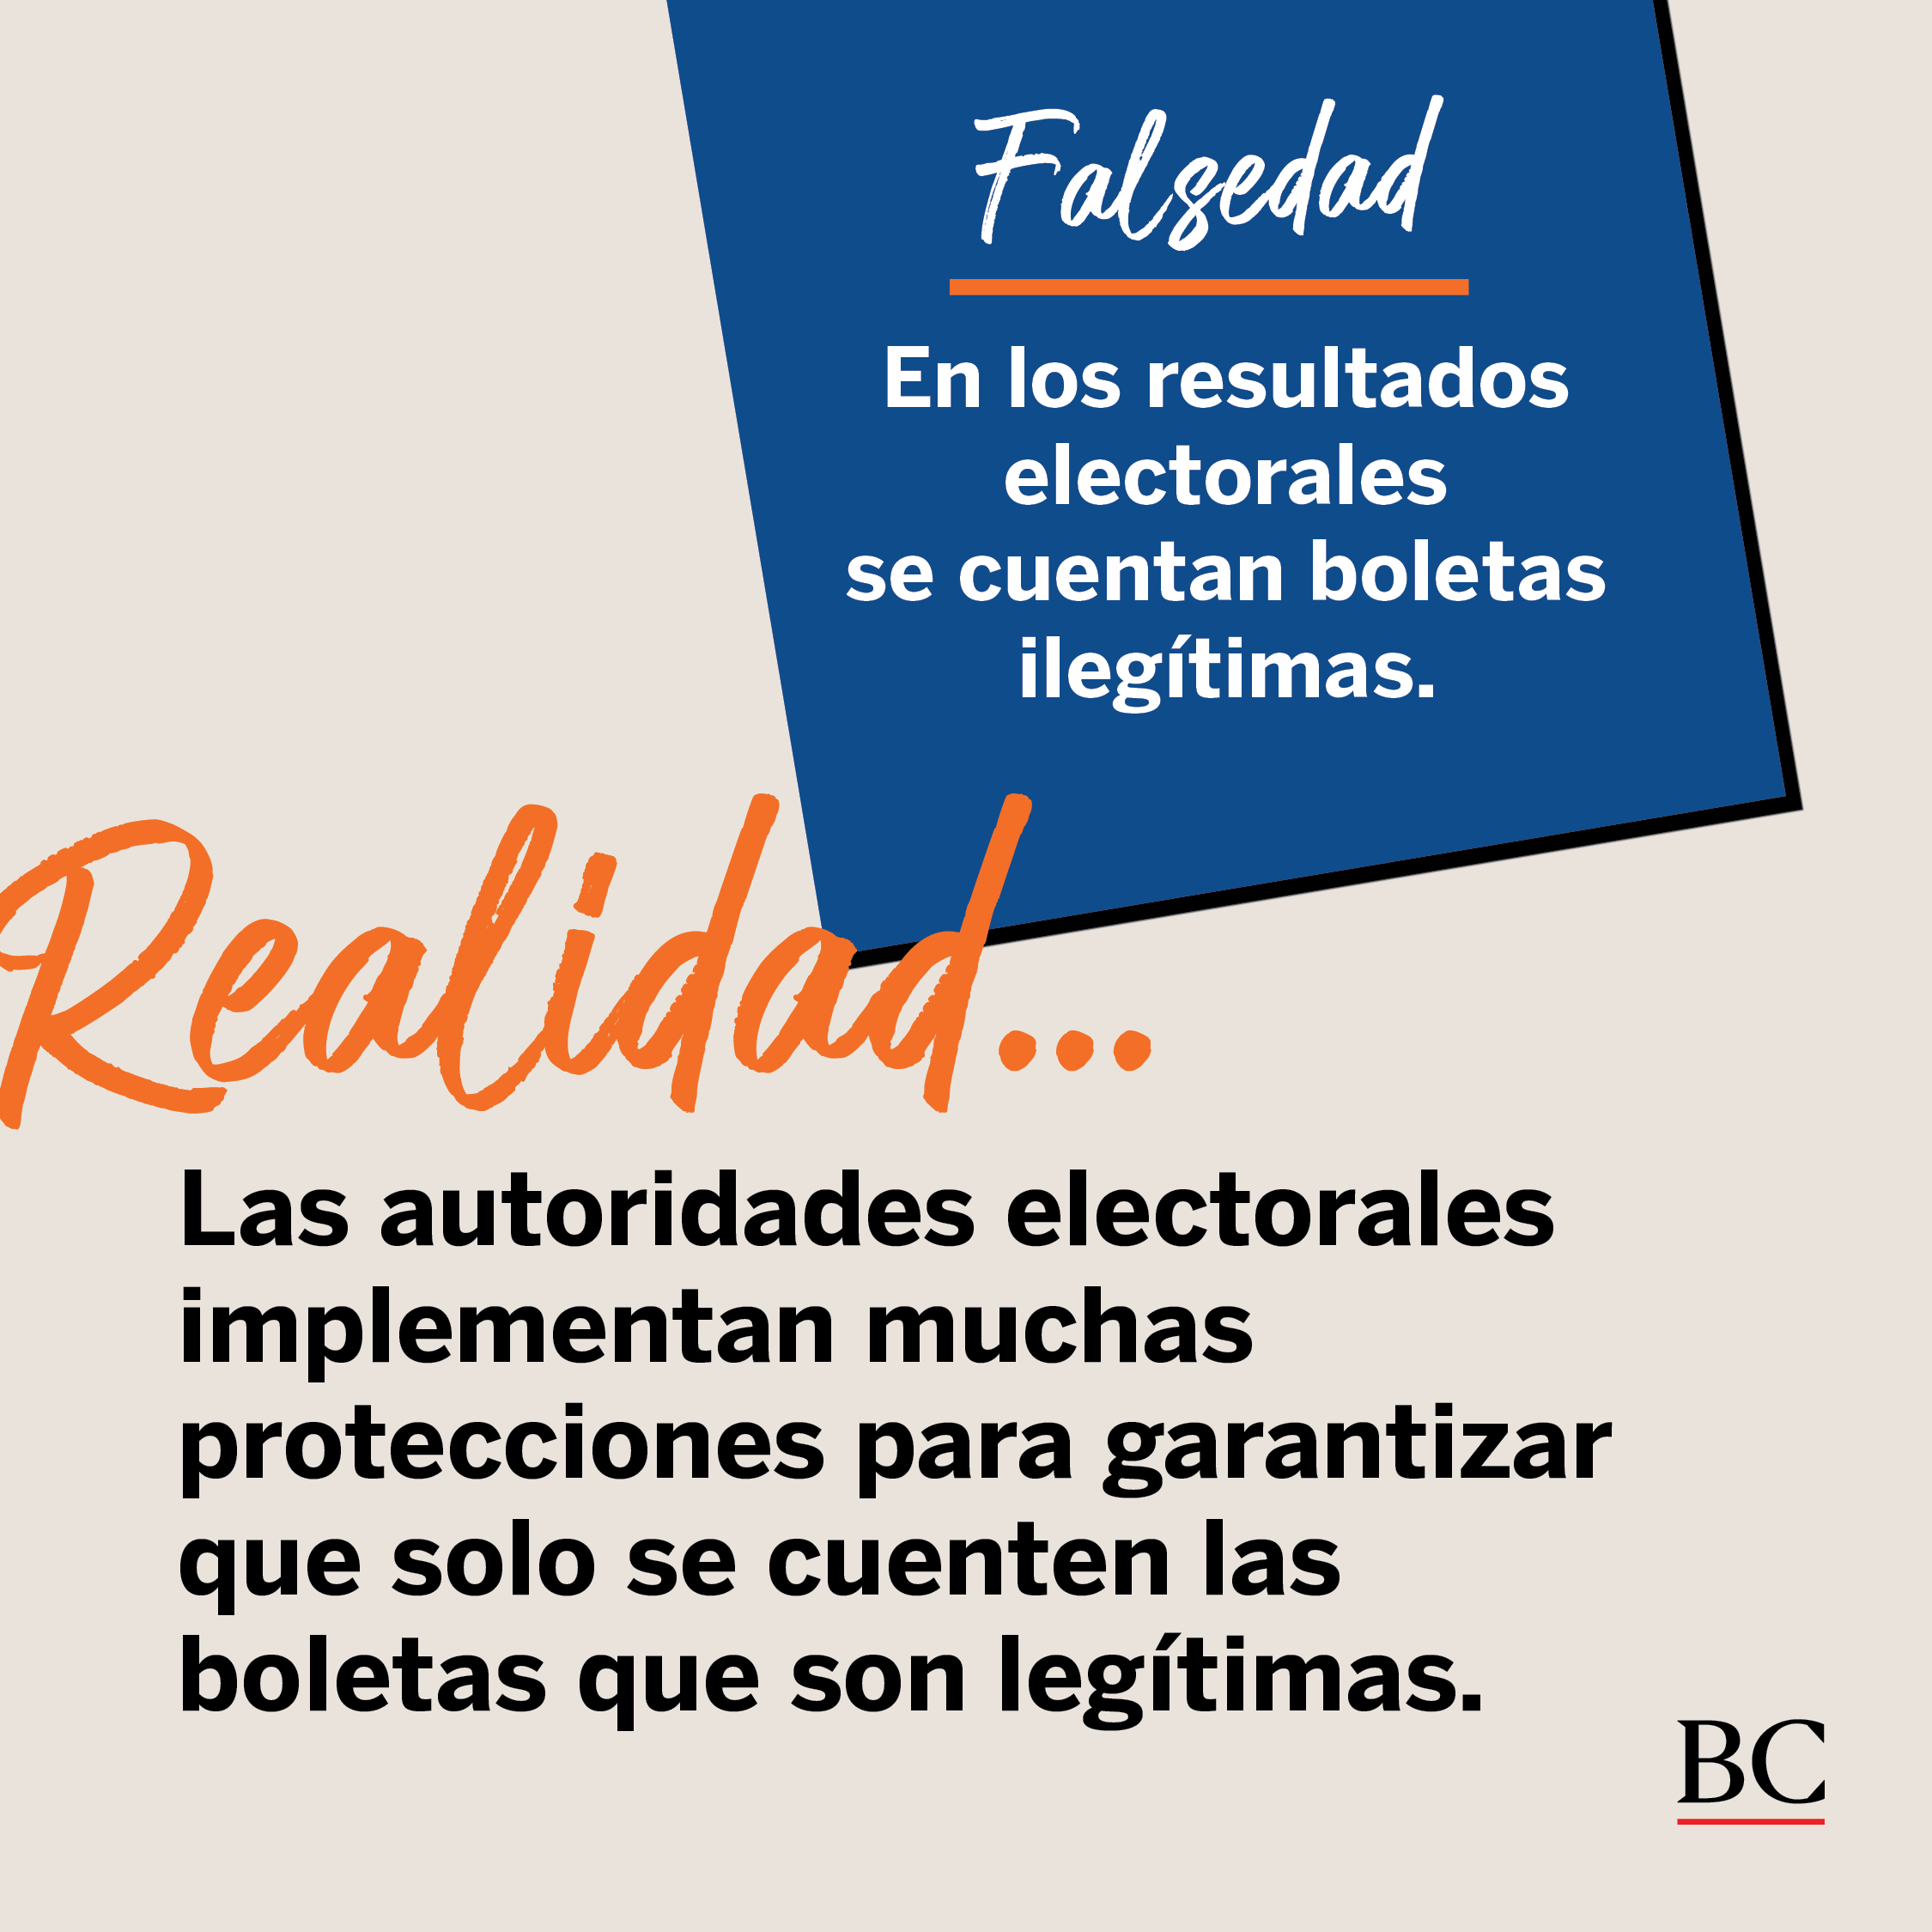 REALIDAD: Las autoridades electorales implementan muchas protecciones  para garantizar que solo se cuenten las boletas que son legítimas.